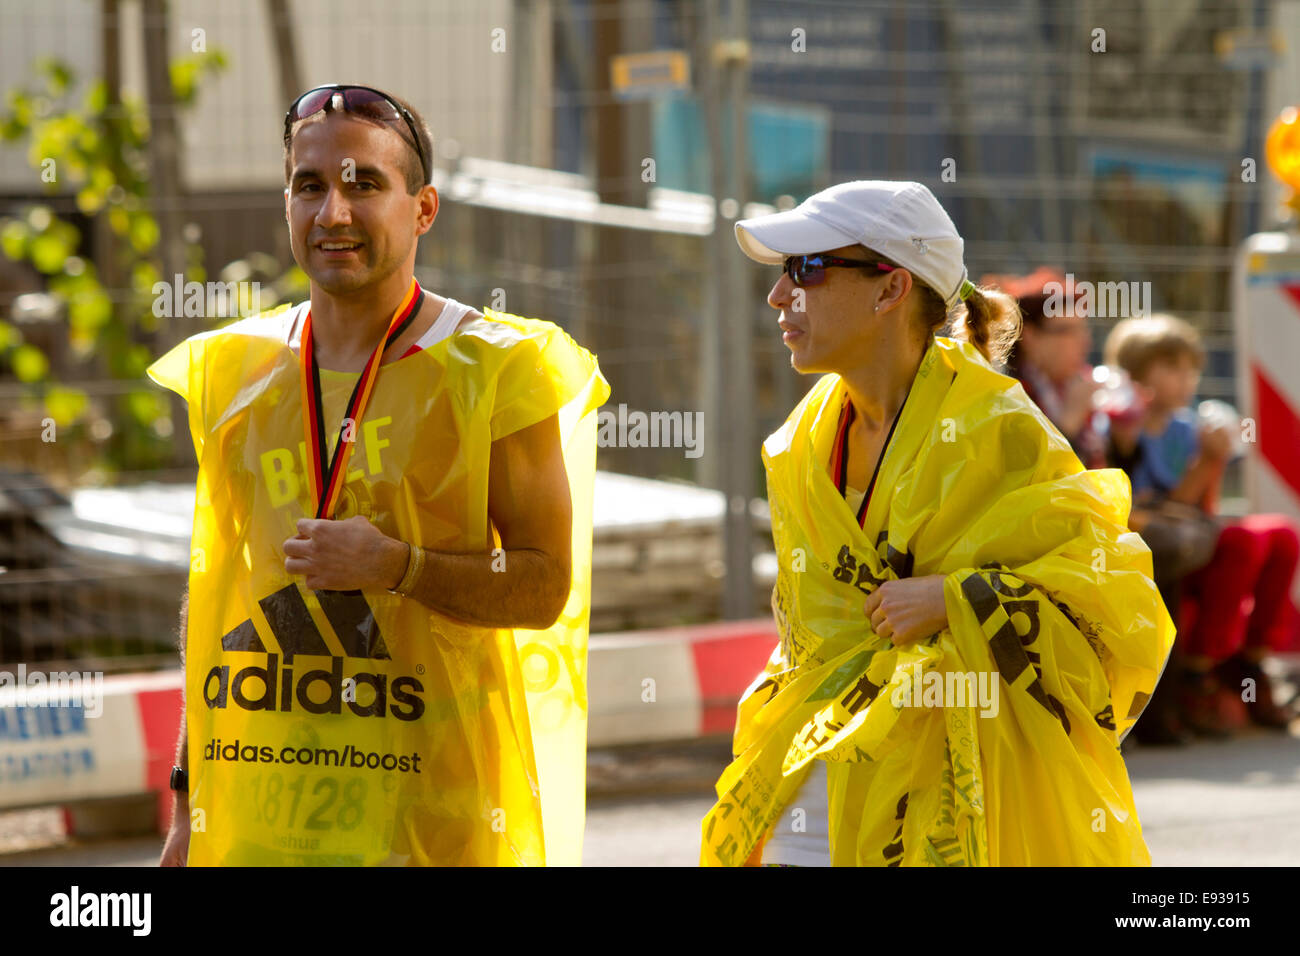 Corredores de maratón envuelto en plástico después de la carrera Foto de stock